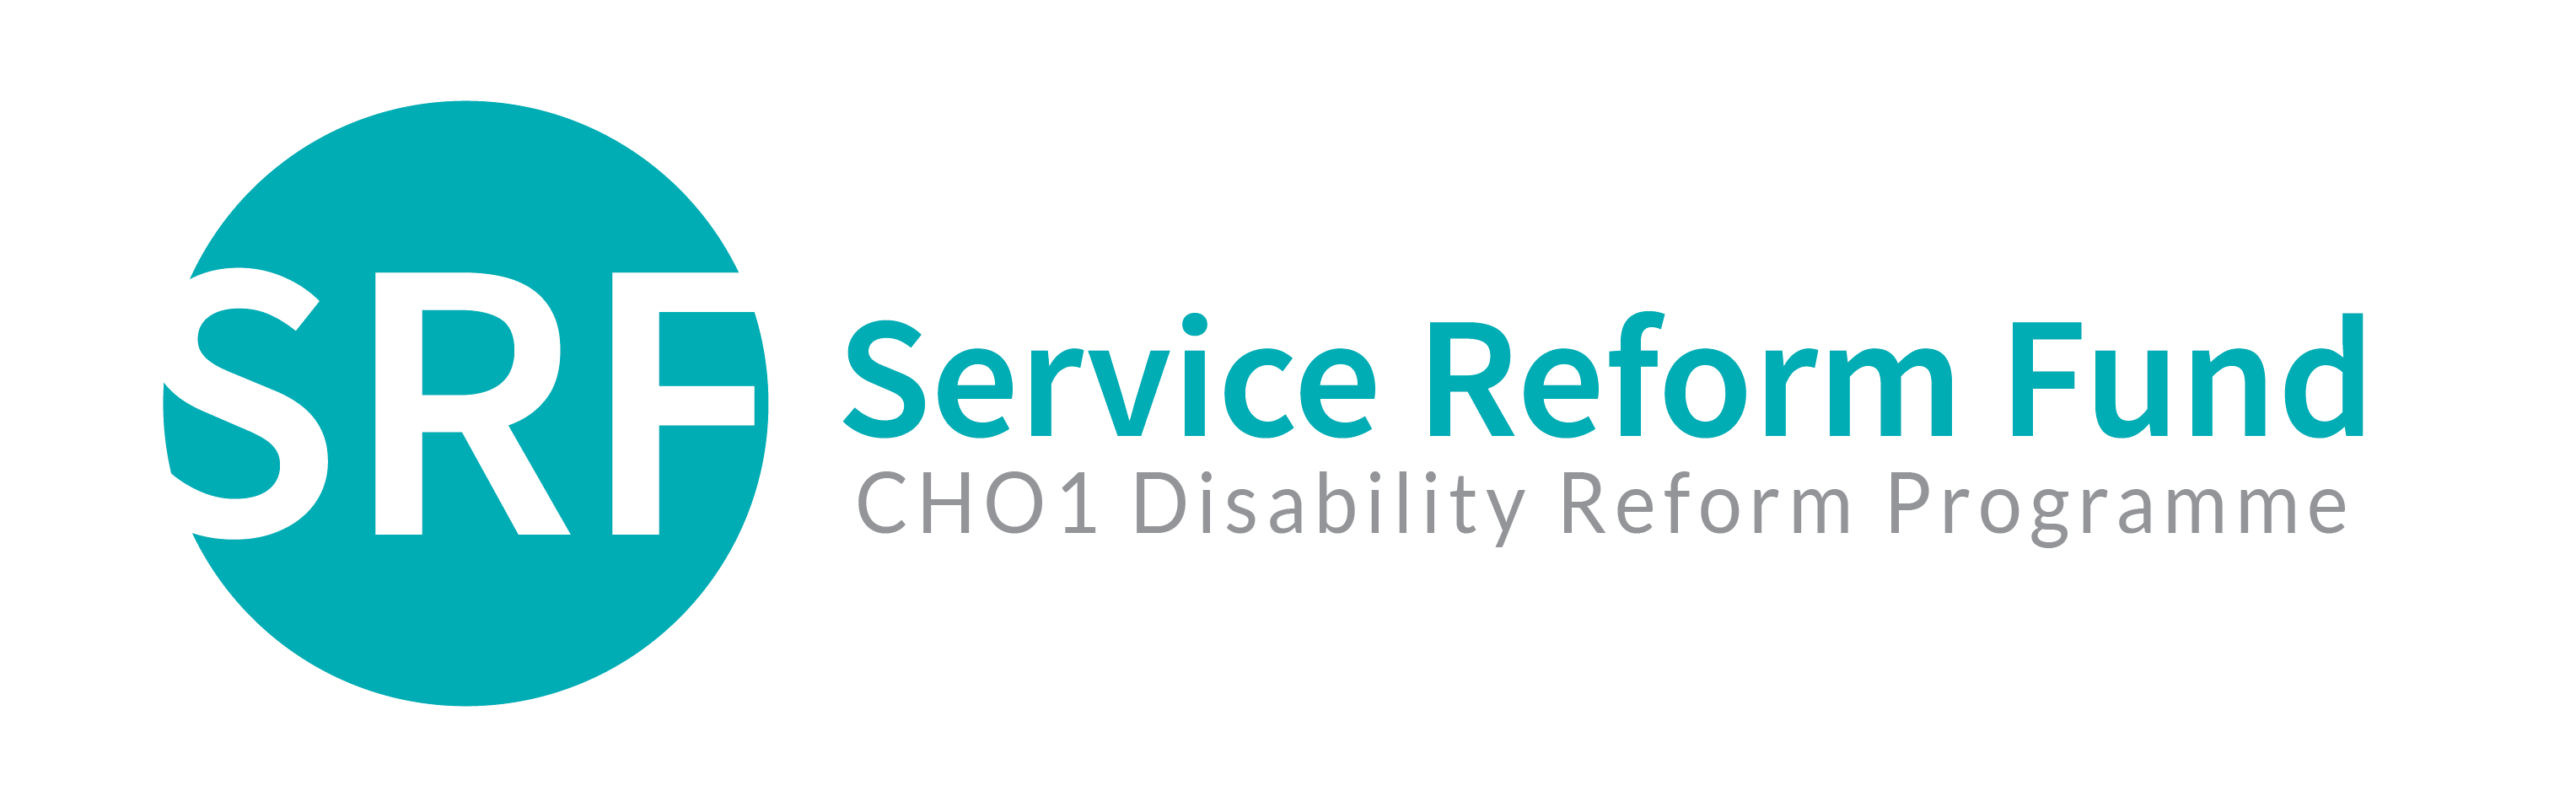 Service Reform Fund logo